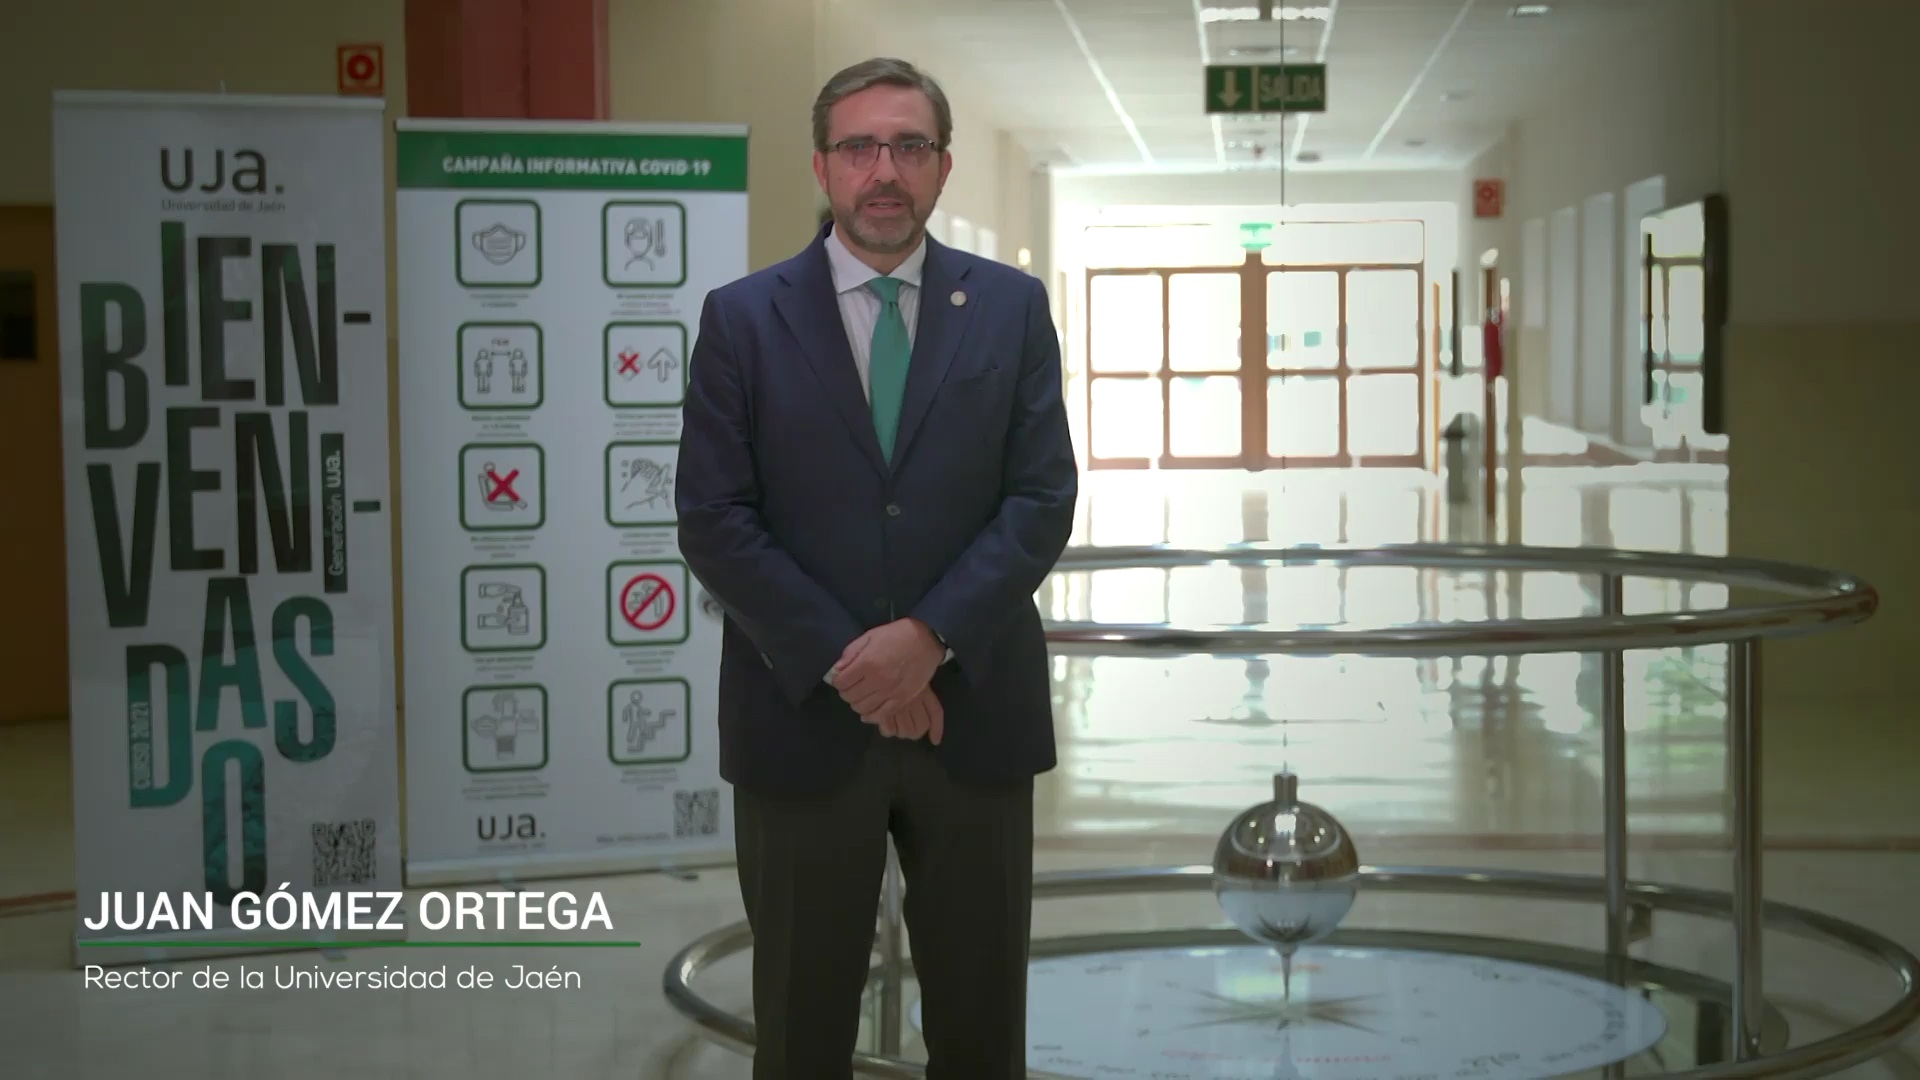 Mensaje de bienvenida del Rector de la Universidad de Jaén con motivo del inicio de las clases (curso 2020-2021)